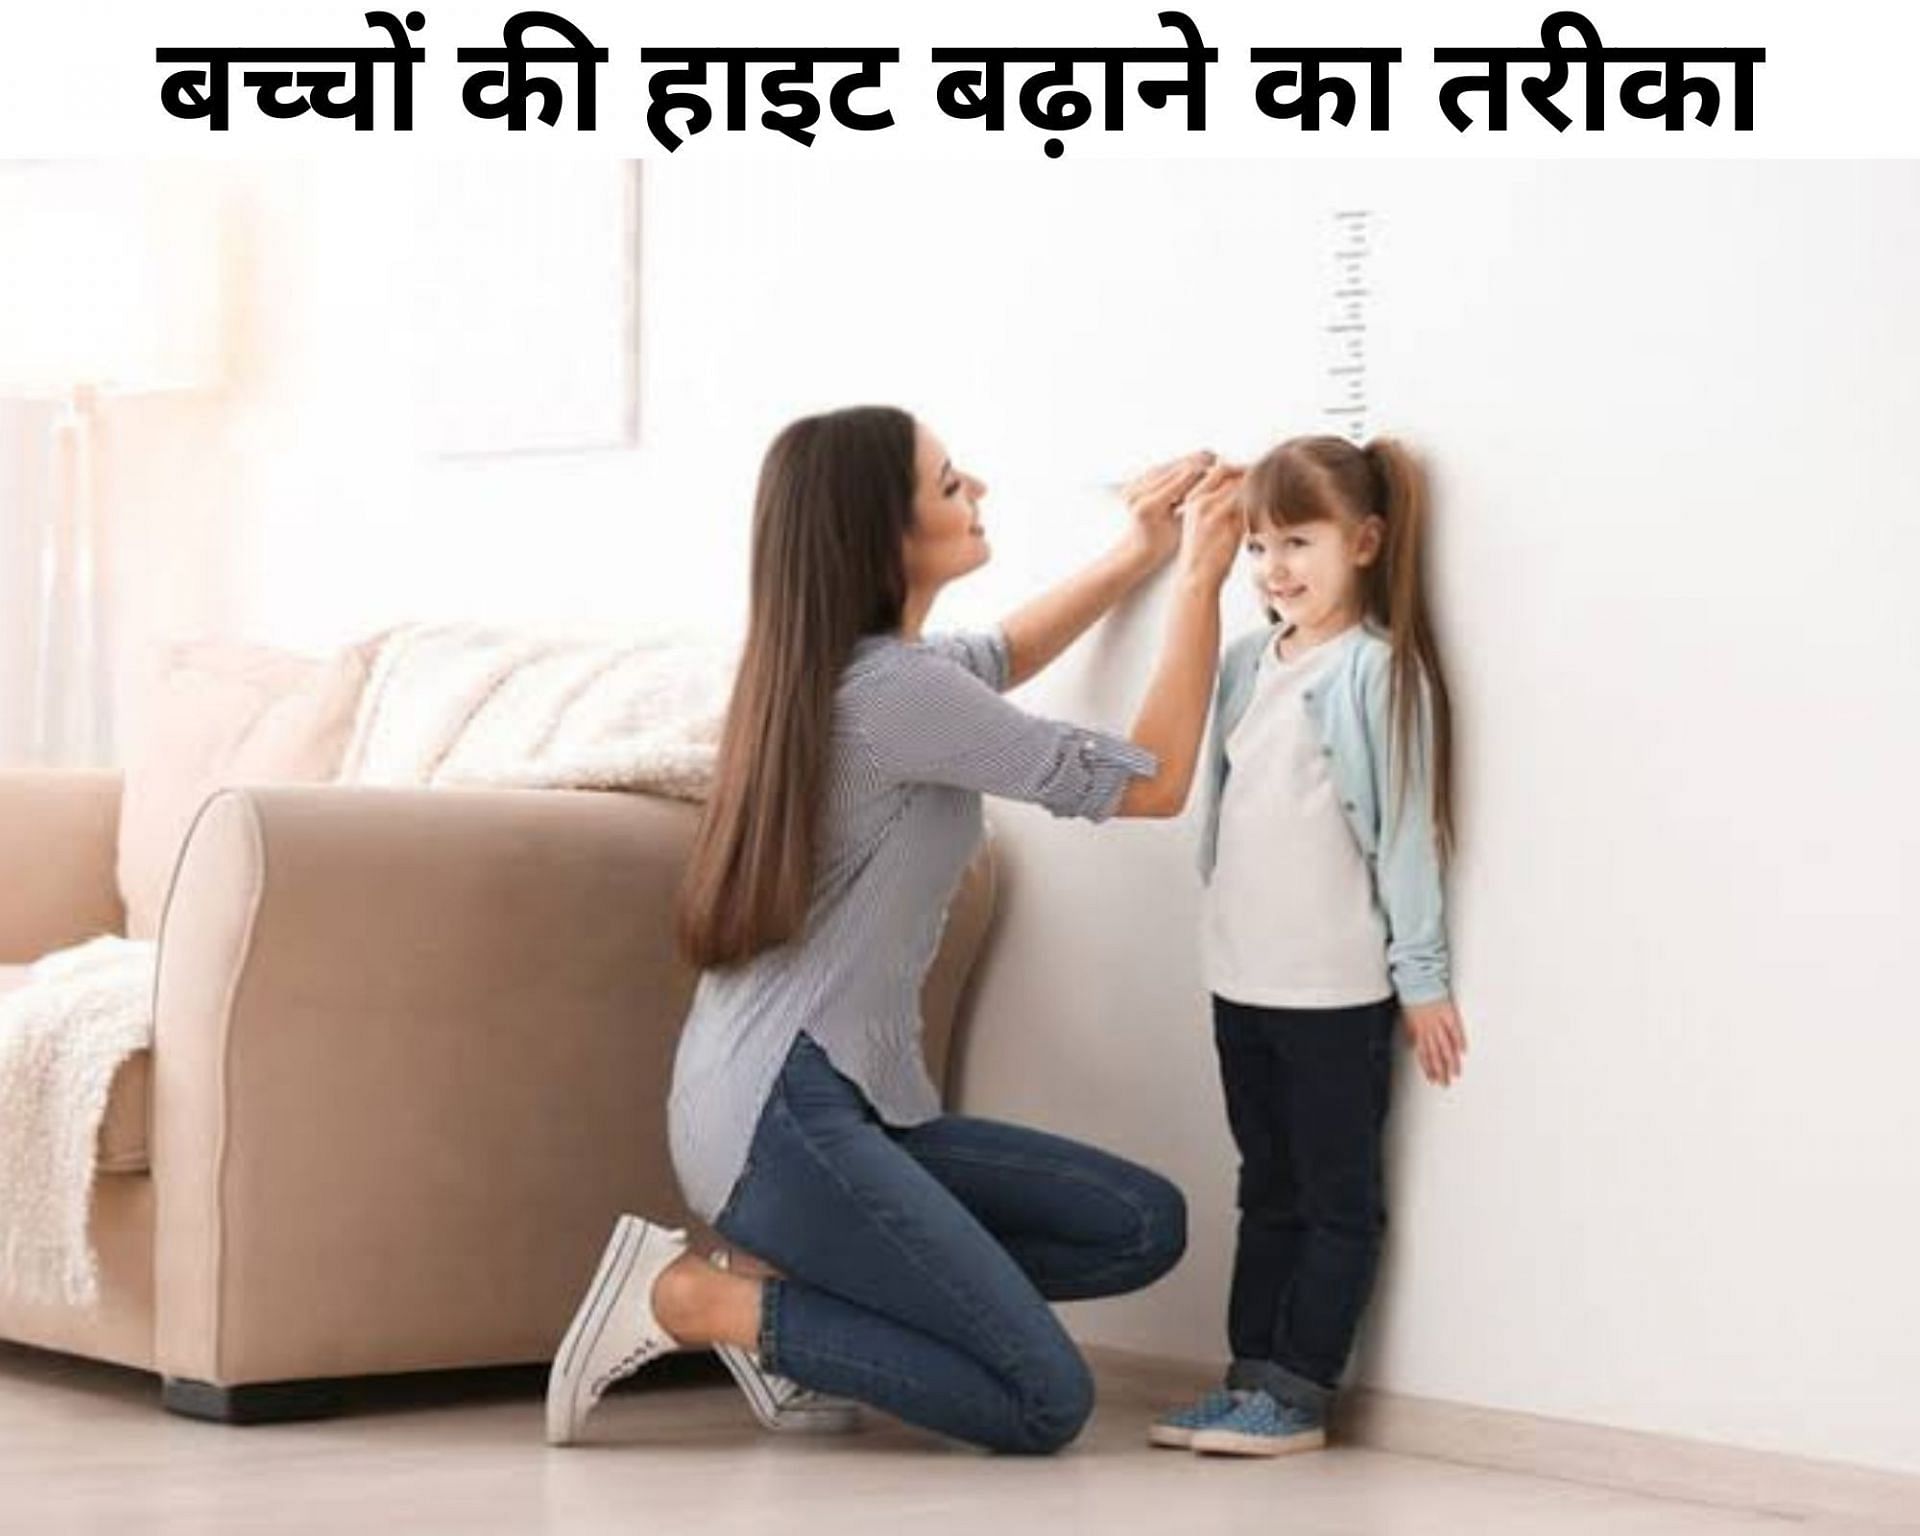 बच्चों की हाइट बढ़ाने का तरीका (फोटो - sportskeeda hindi)